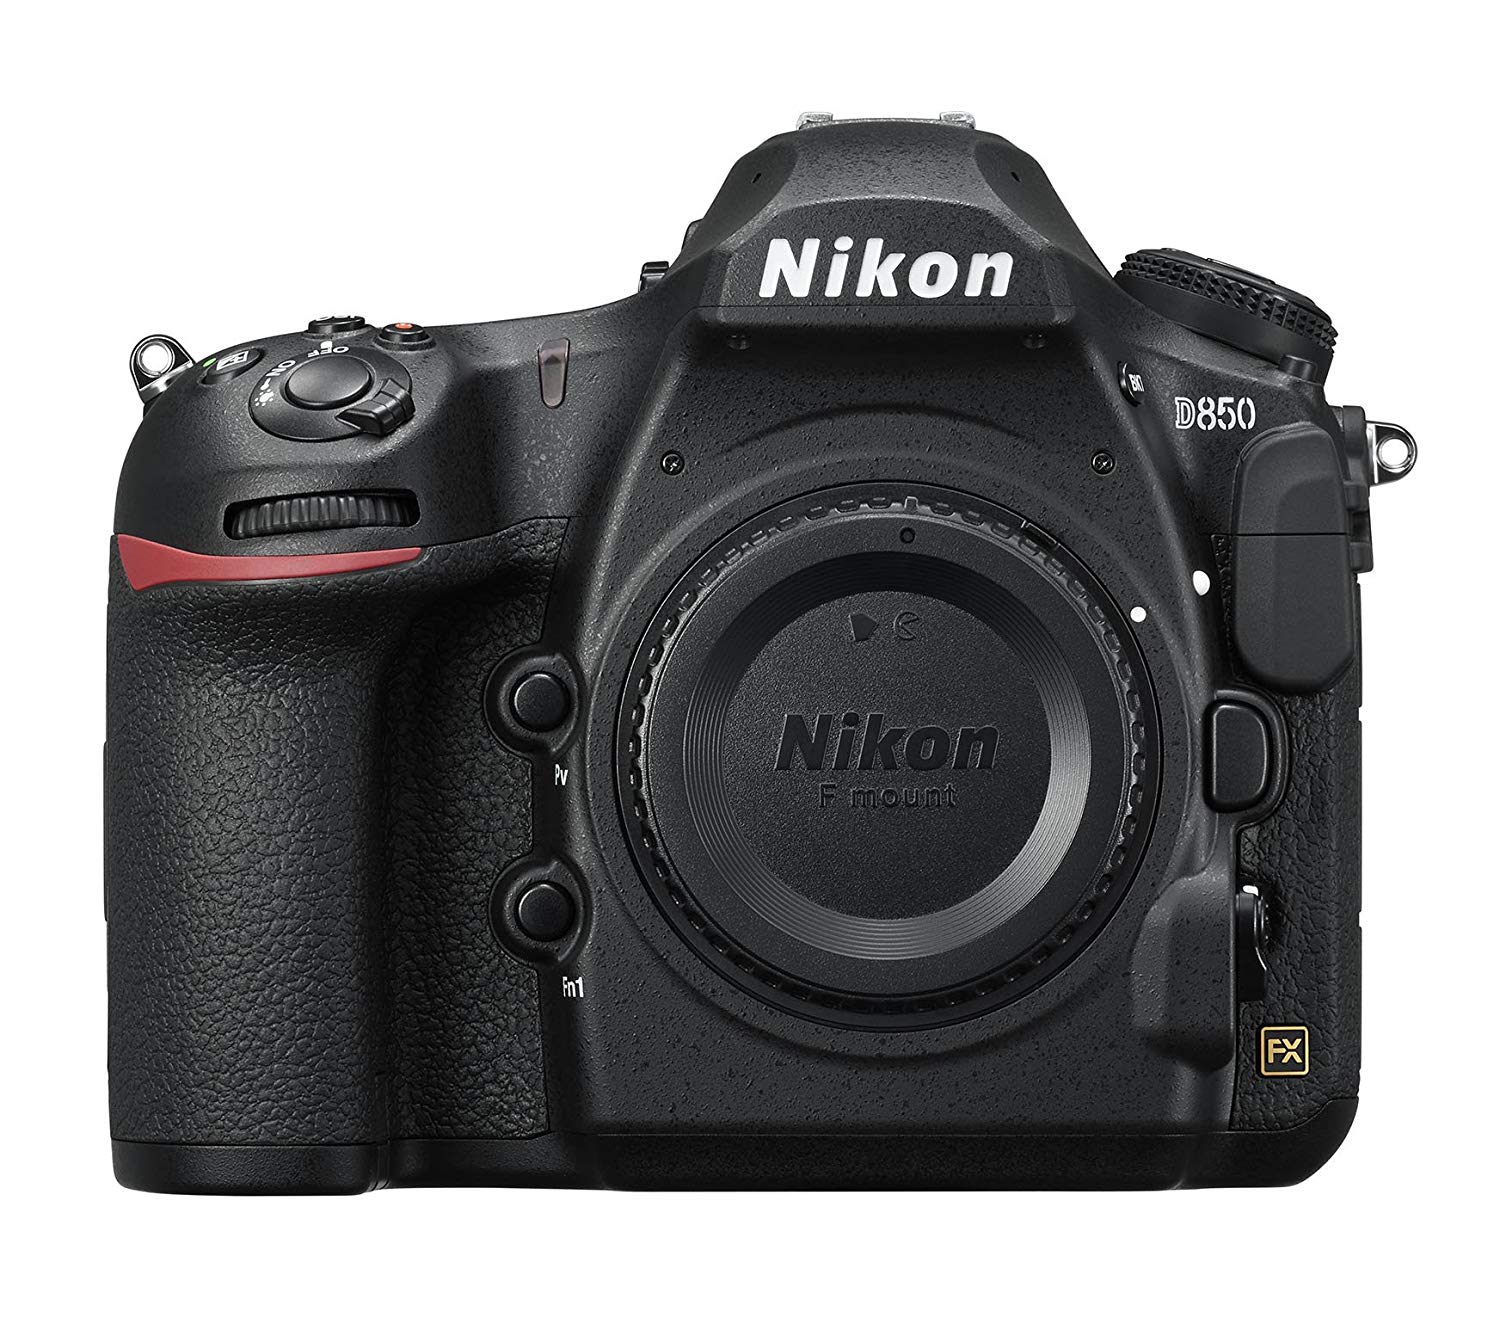 Nikon D850 FX- प्रारूप डिजिटल एसएलआर कैमरा बॉडी